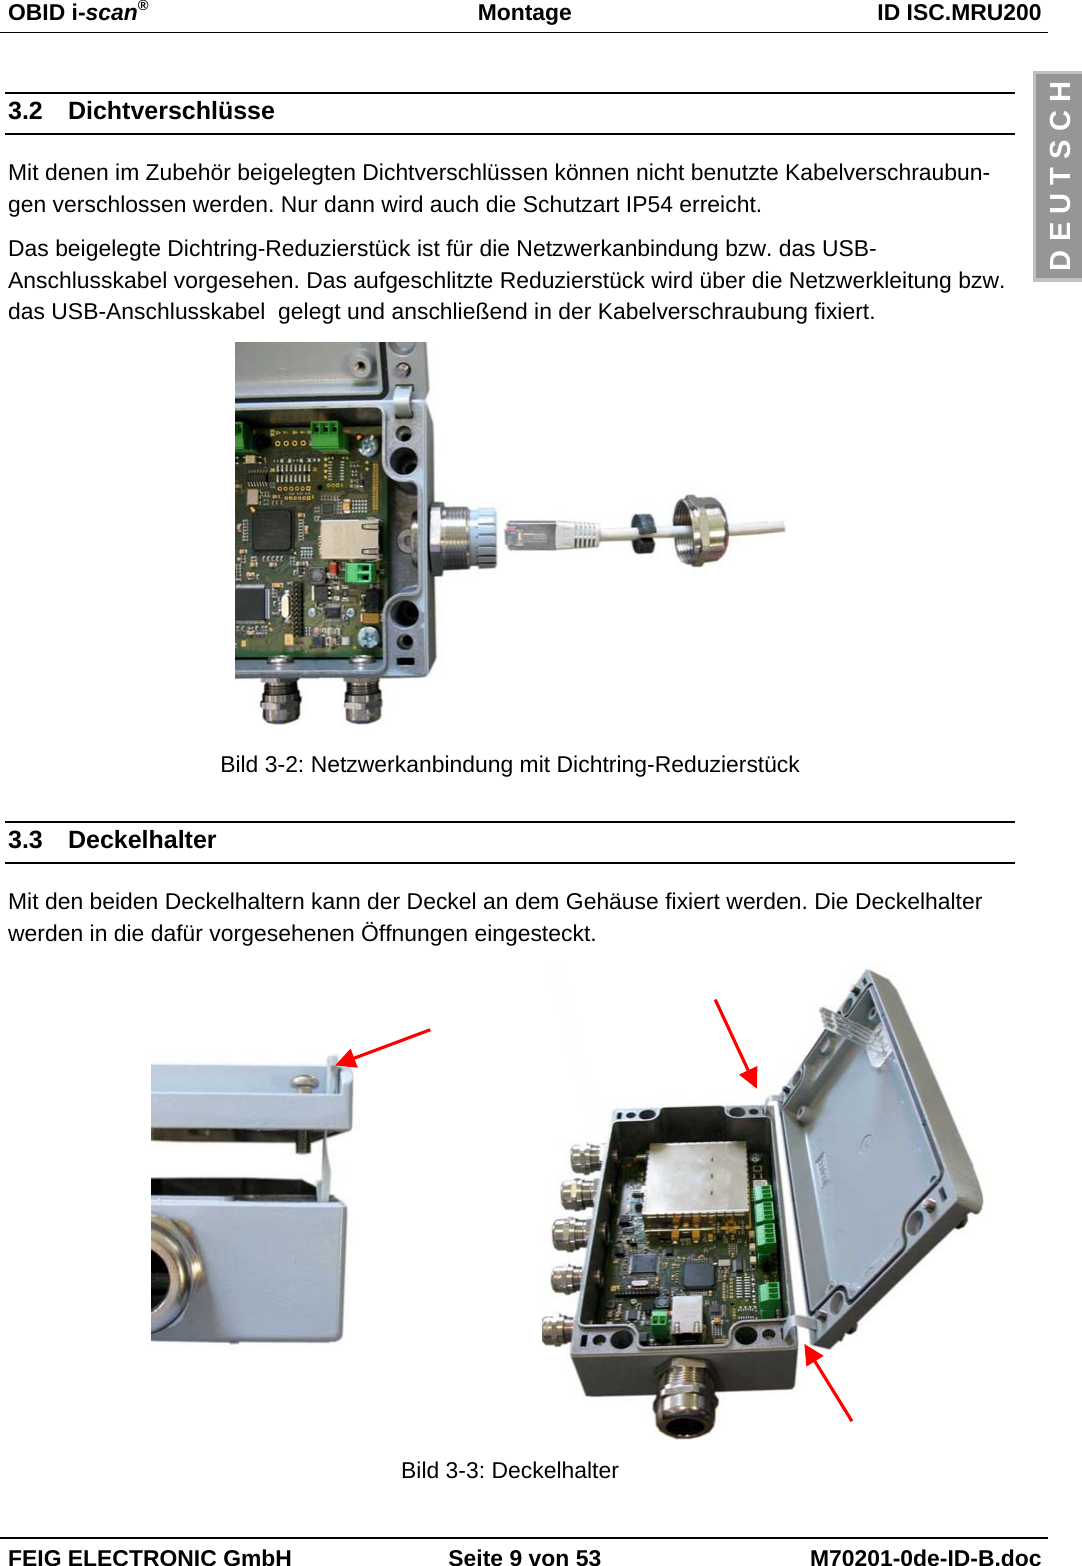 OBID i-scan®Montage ID ISC.MRU200FEIG ELECTRONIC GmbH Seite 9 von 53 M70201-0de-ID-B.docD E U T S C H3.2 DichtverschlüsseMit denen im Zubehör beigelegten Dichtverschlüssen können nicht benutzte Kabelverschraubun-gen verschlossen werden. Nur dann wird auch die Schutzart IP54 erreicht.Das beigelegte Dichtring-Reduzierstück ist für die Netzwerkanbindung bzw. das USB-Anschlusskabel vorgesehen. Das aufgeschlitzte Reduzierstück wird über die Netzwerkleitung bzw.das USB-Anschlusskabel  gelegt und anschließend in der Kabelverschraubung fixiert.Bild 3-2: Netzwerkanbindung mit Dichtring-Reduzierstück3.3 DeckelhalterMit den beiden Deckelhaltern kann der Deckel an dem Gehäuse fixiert werden. Die Deckelhalterwerden in die dafür vorgesehenen Öffnungen eingesteckt.Bild 3-3: Deckelhalter